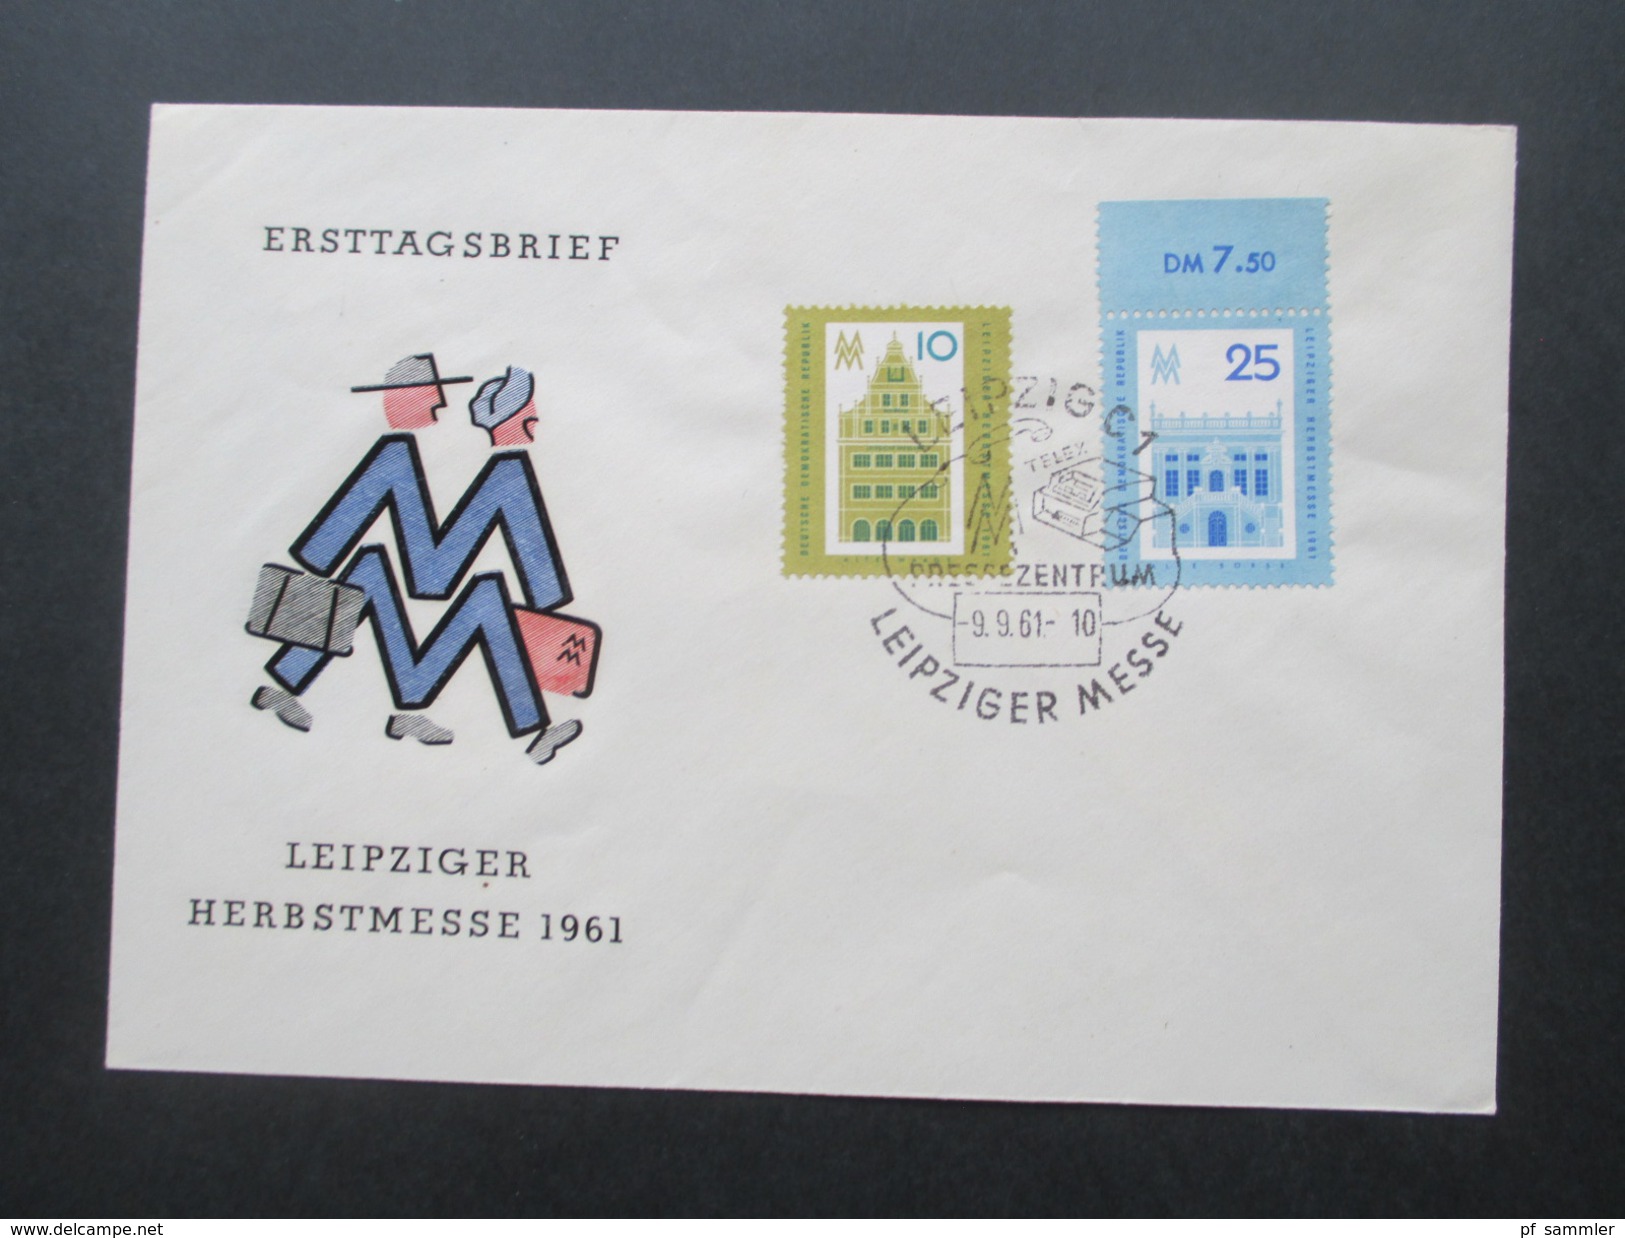 DDR Belegeposten 1958 - 1976 FDC / Einschreiben / Satzbriefe / Blocks / ZD usw. 100 Belege! Stöberposten / Fundgrube?!